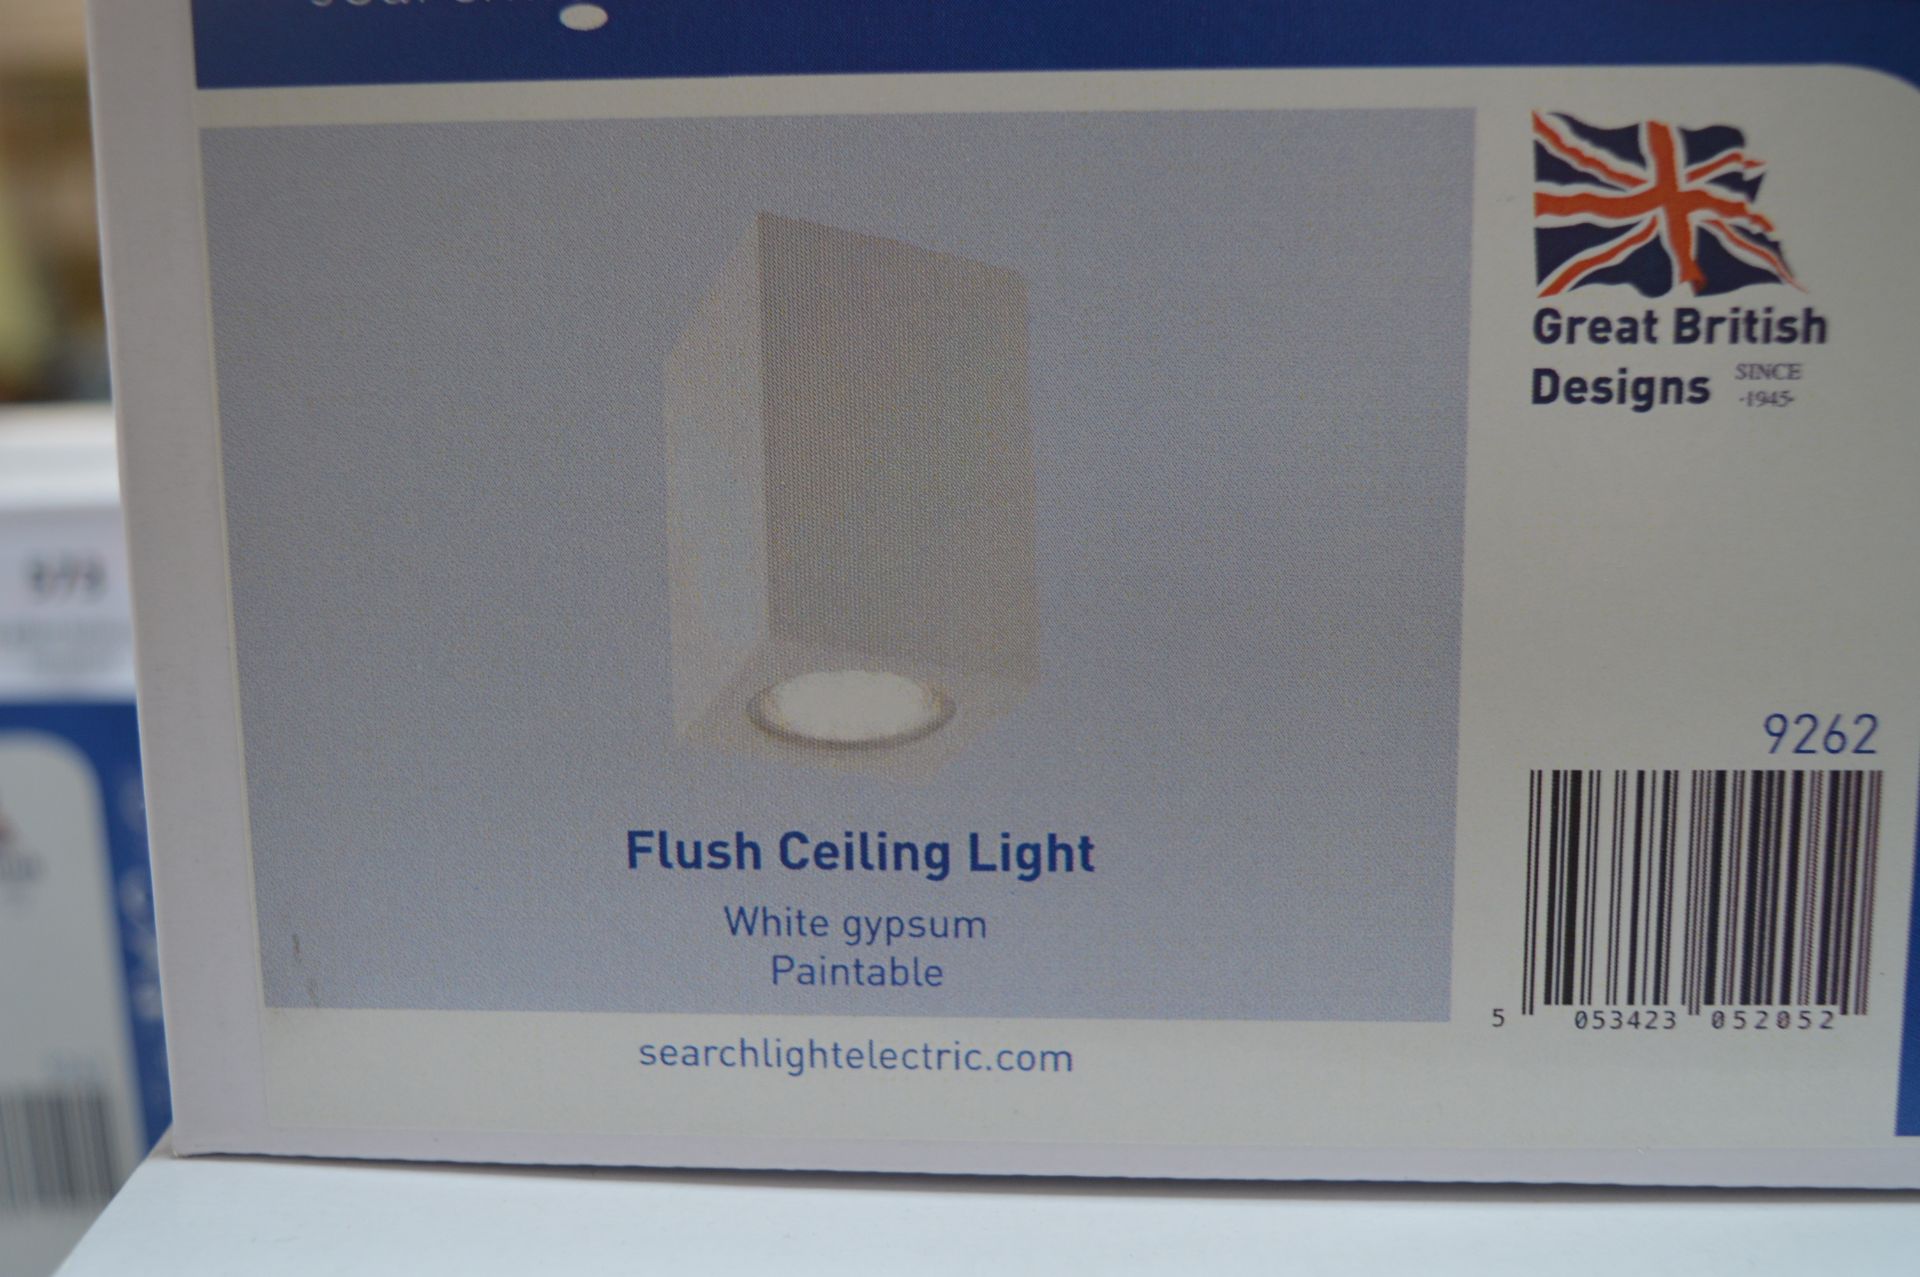 *Flush Ceiling Light in White Gypsum